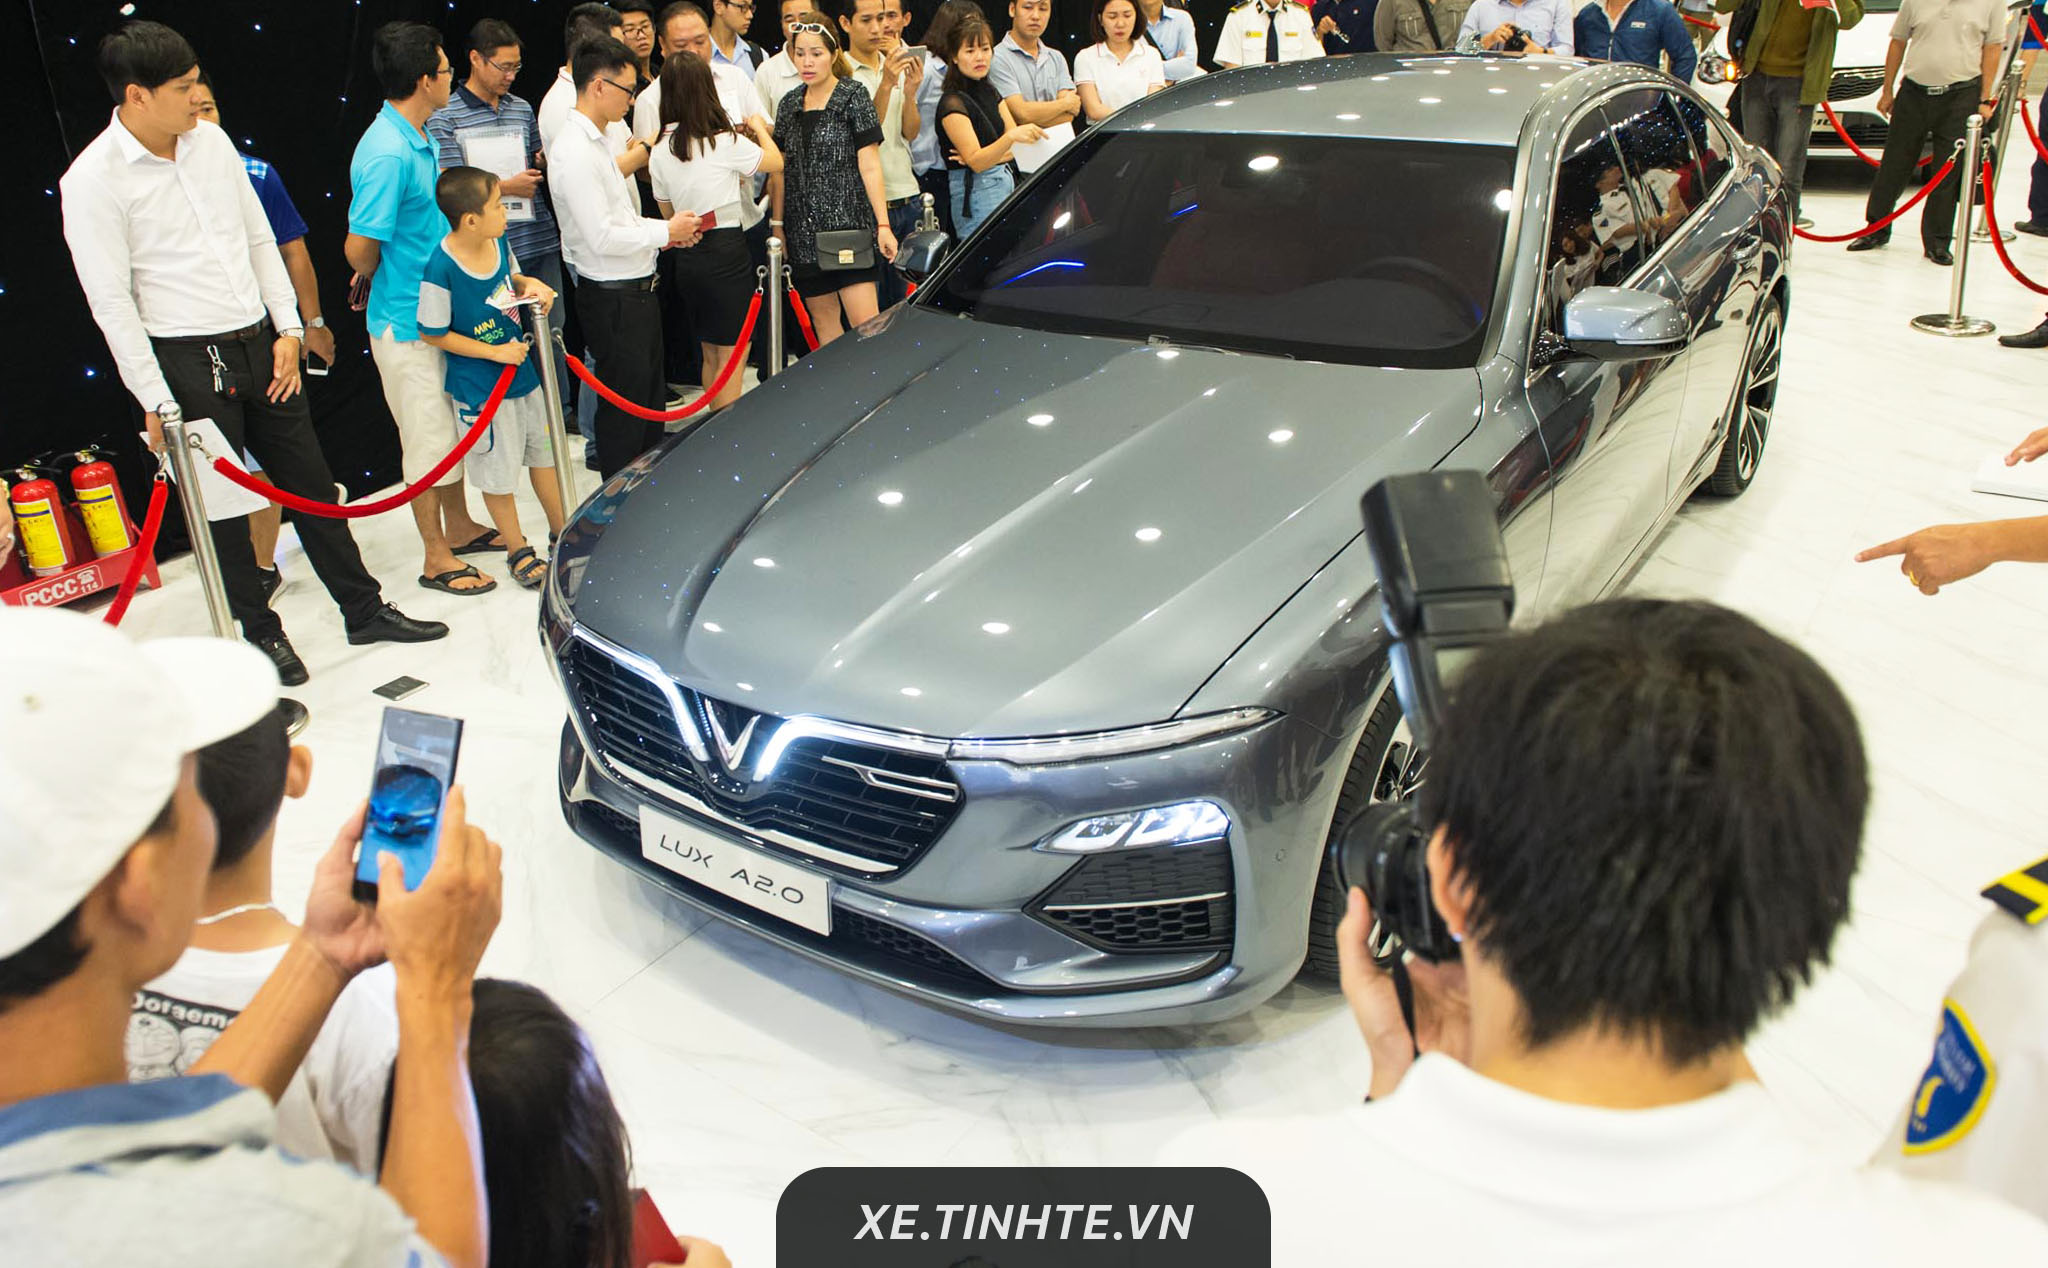 Hình ảnh VinFast trưng bày dàn xe hơi tại Sài Gòn - Người đến xem rất đông, nhiều ý kiến khen xe đẹp